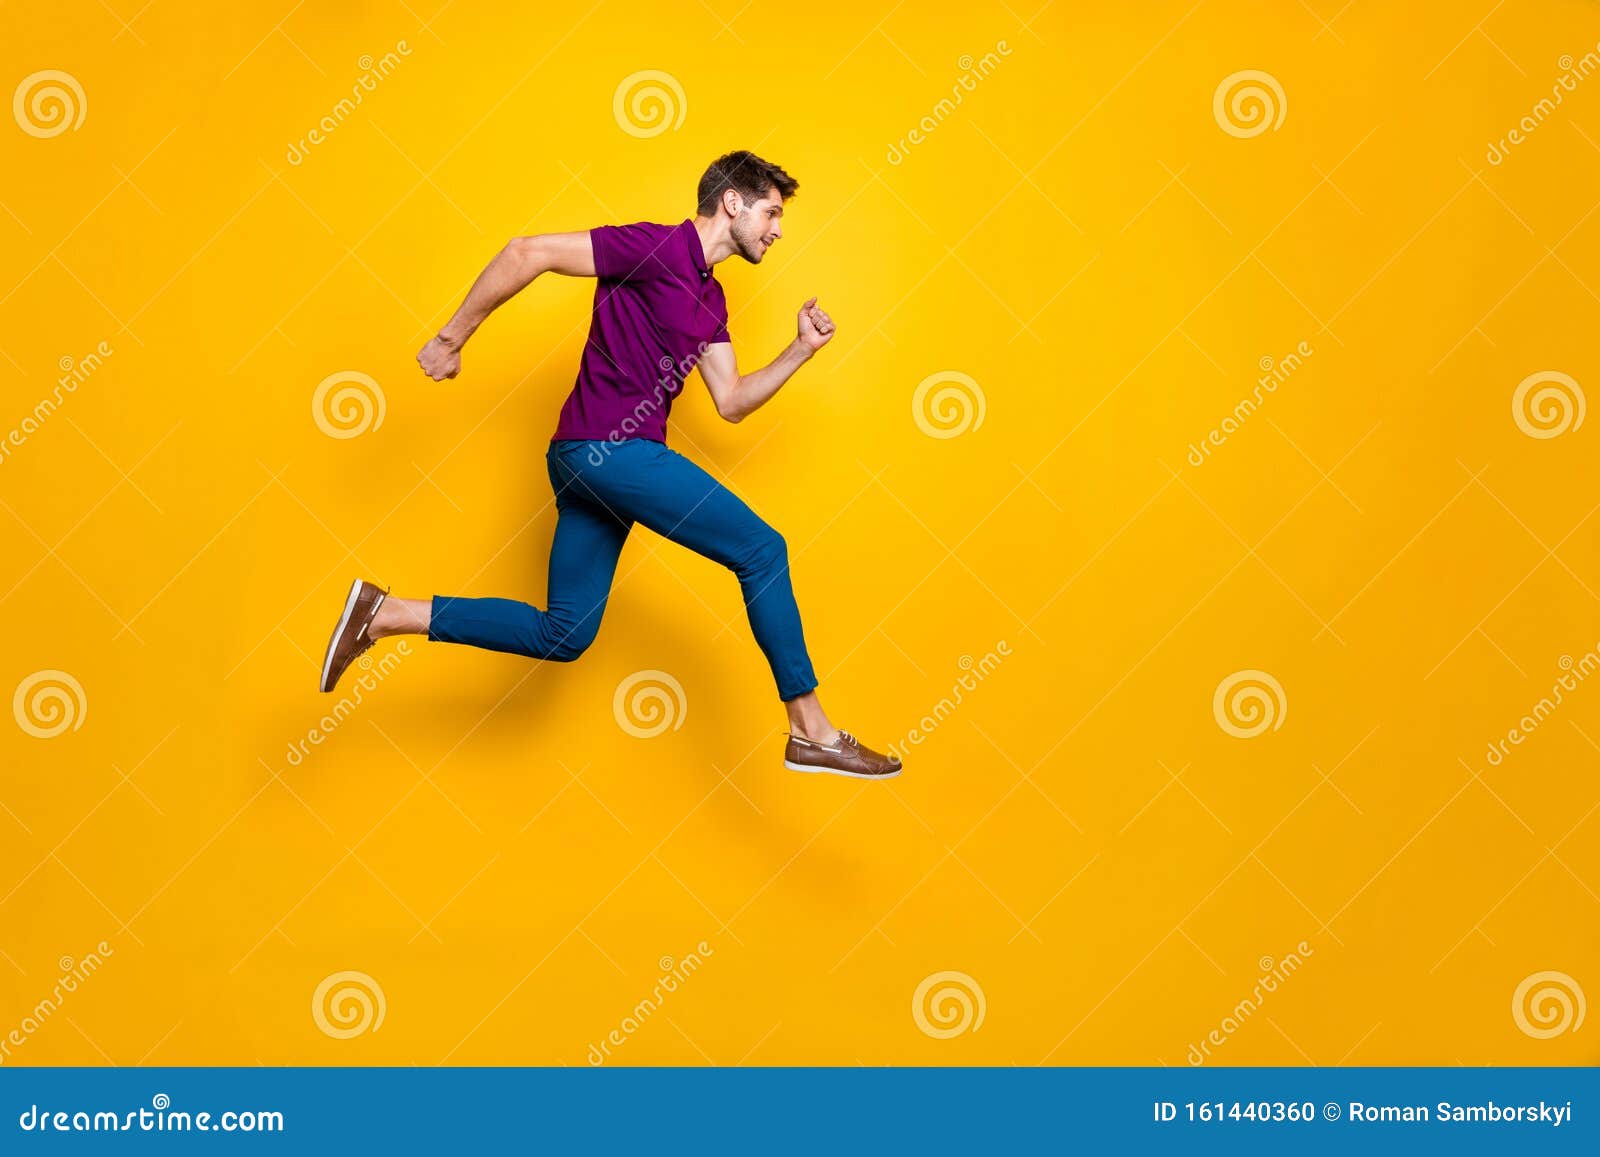 Pełna długość zdjęcia profilu bocznego ciała szybkiego przystojniaka w niebieskich spodniach na buty biegnące skacząc